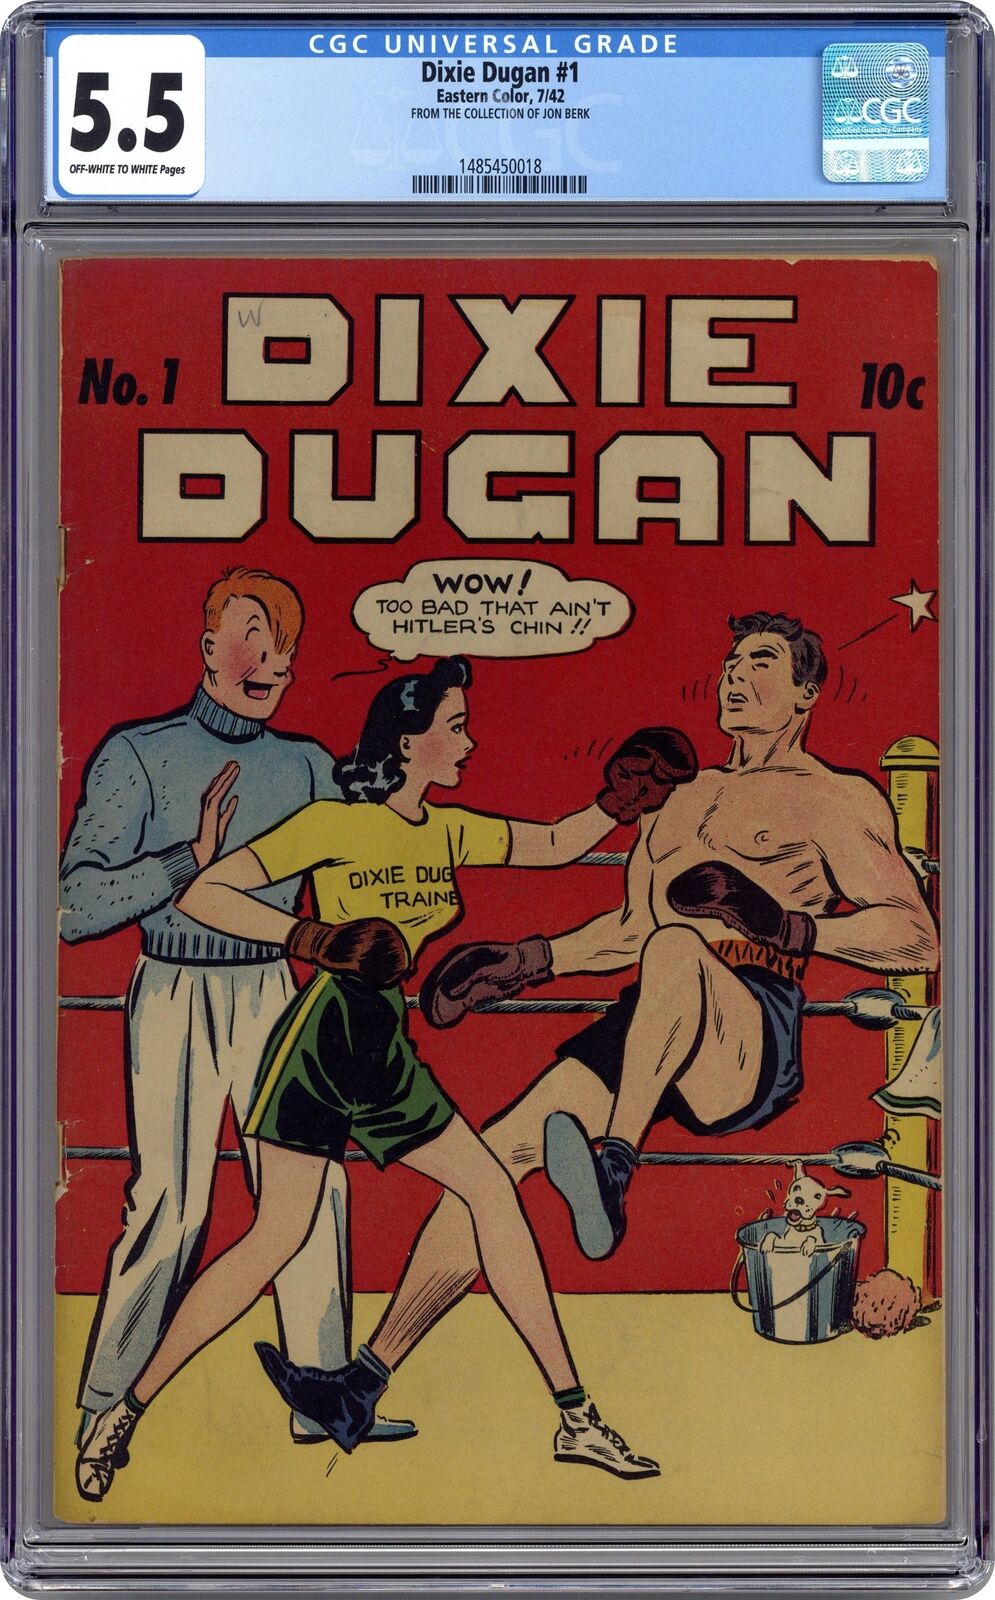 Dixie Dugan #1 CGC 5.5 1942 1485450018